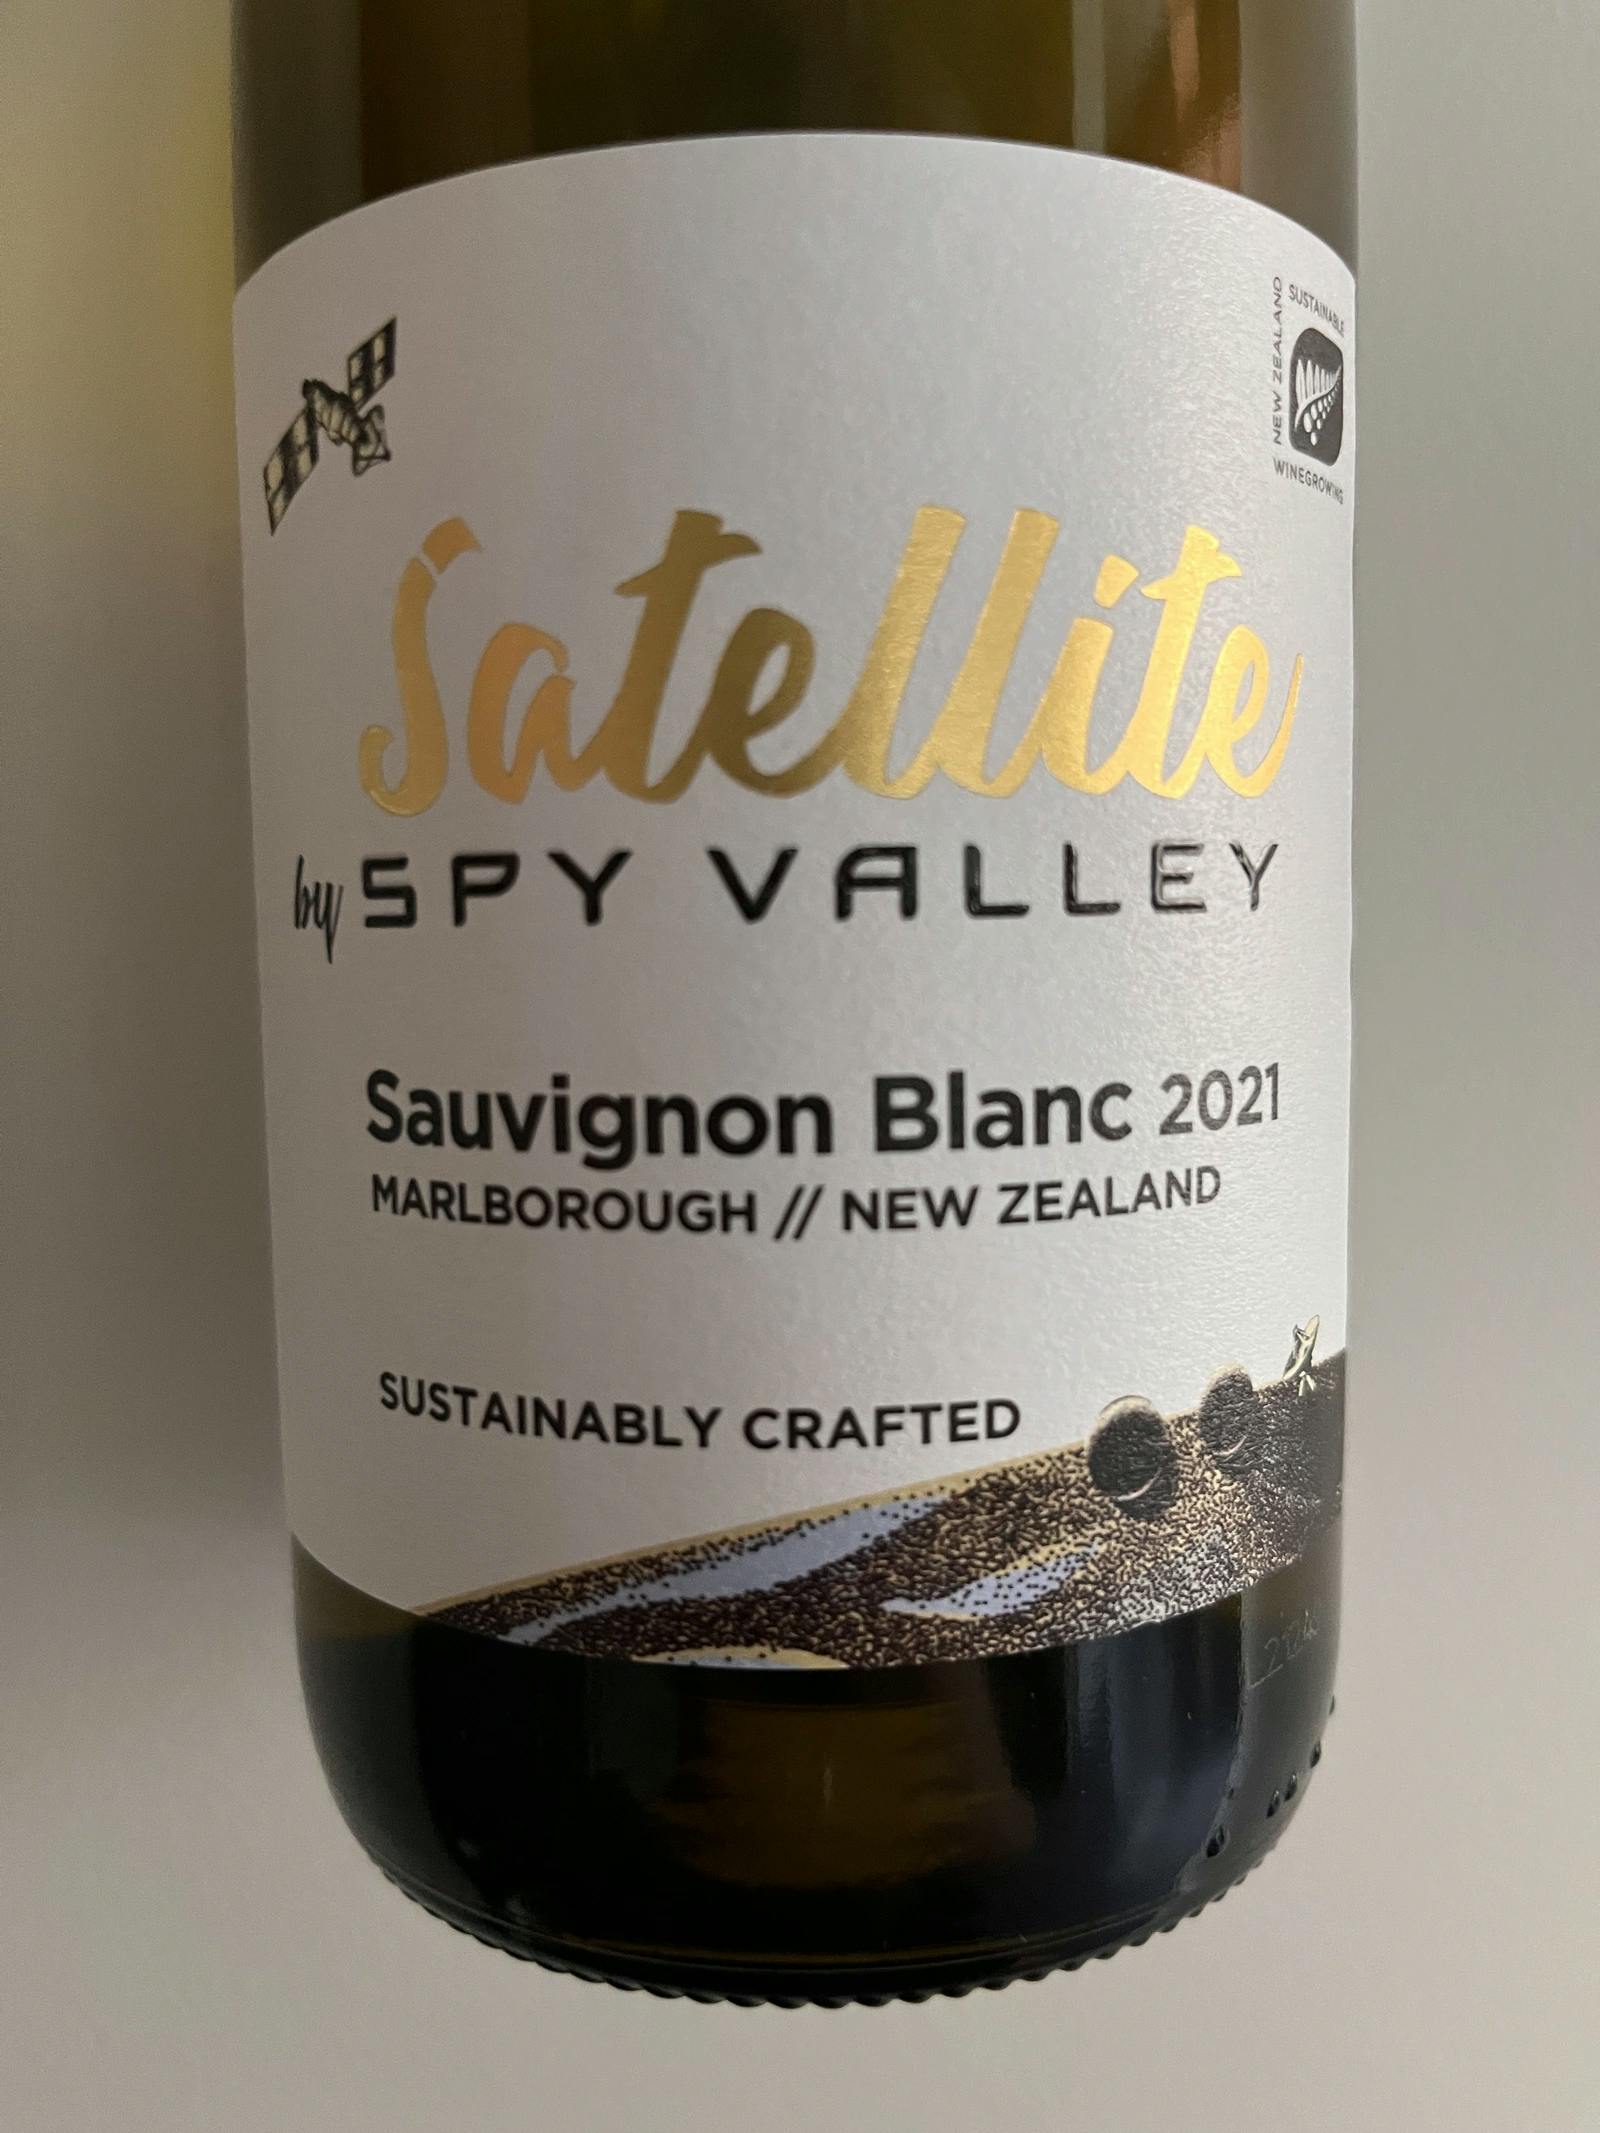 Spy Valley Satellite Sauvignon Blanc 2021